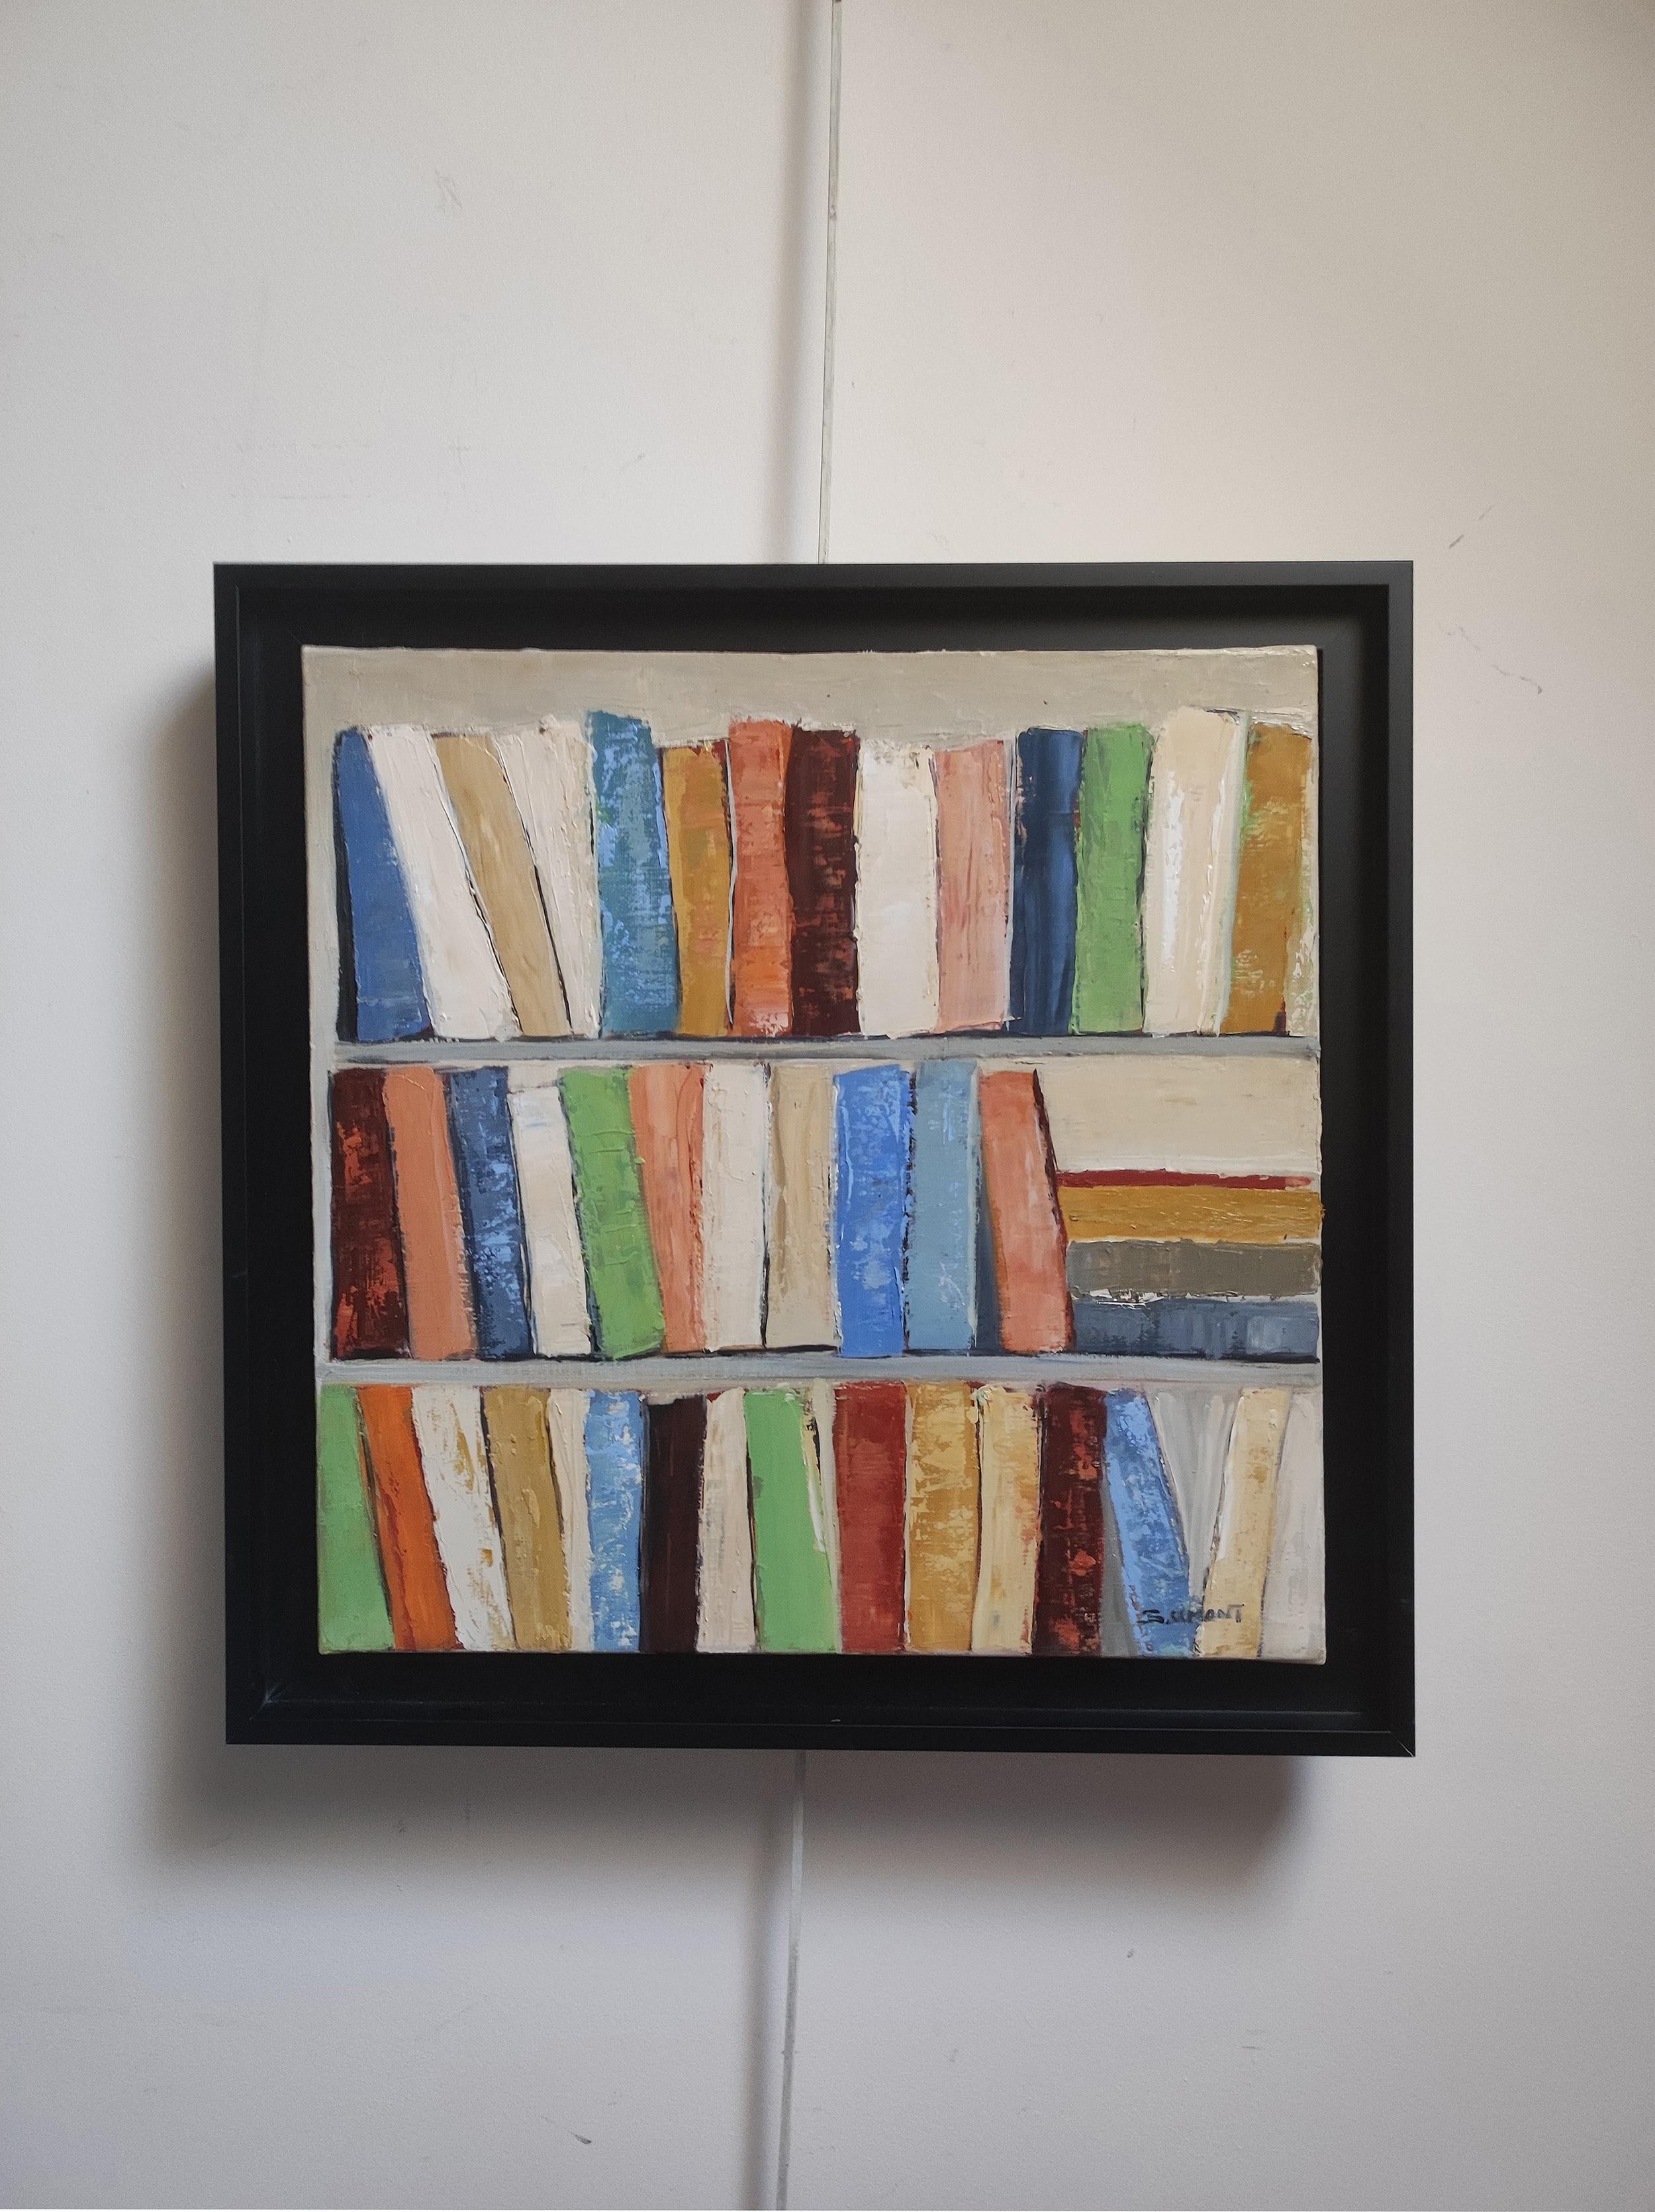 abstrakte Darstellung von Büchern in Regalen. Das Gemälde zeichnet sich durch dicke, sichtbare Pinselstriche aus, die dem Bild Textur und Tiefe verleihen. Die Farbpalette ist vielfältig, wobei jedes 